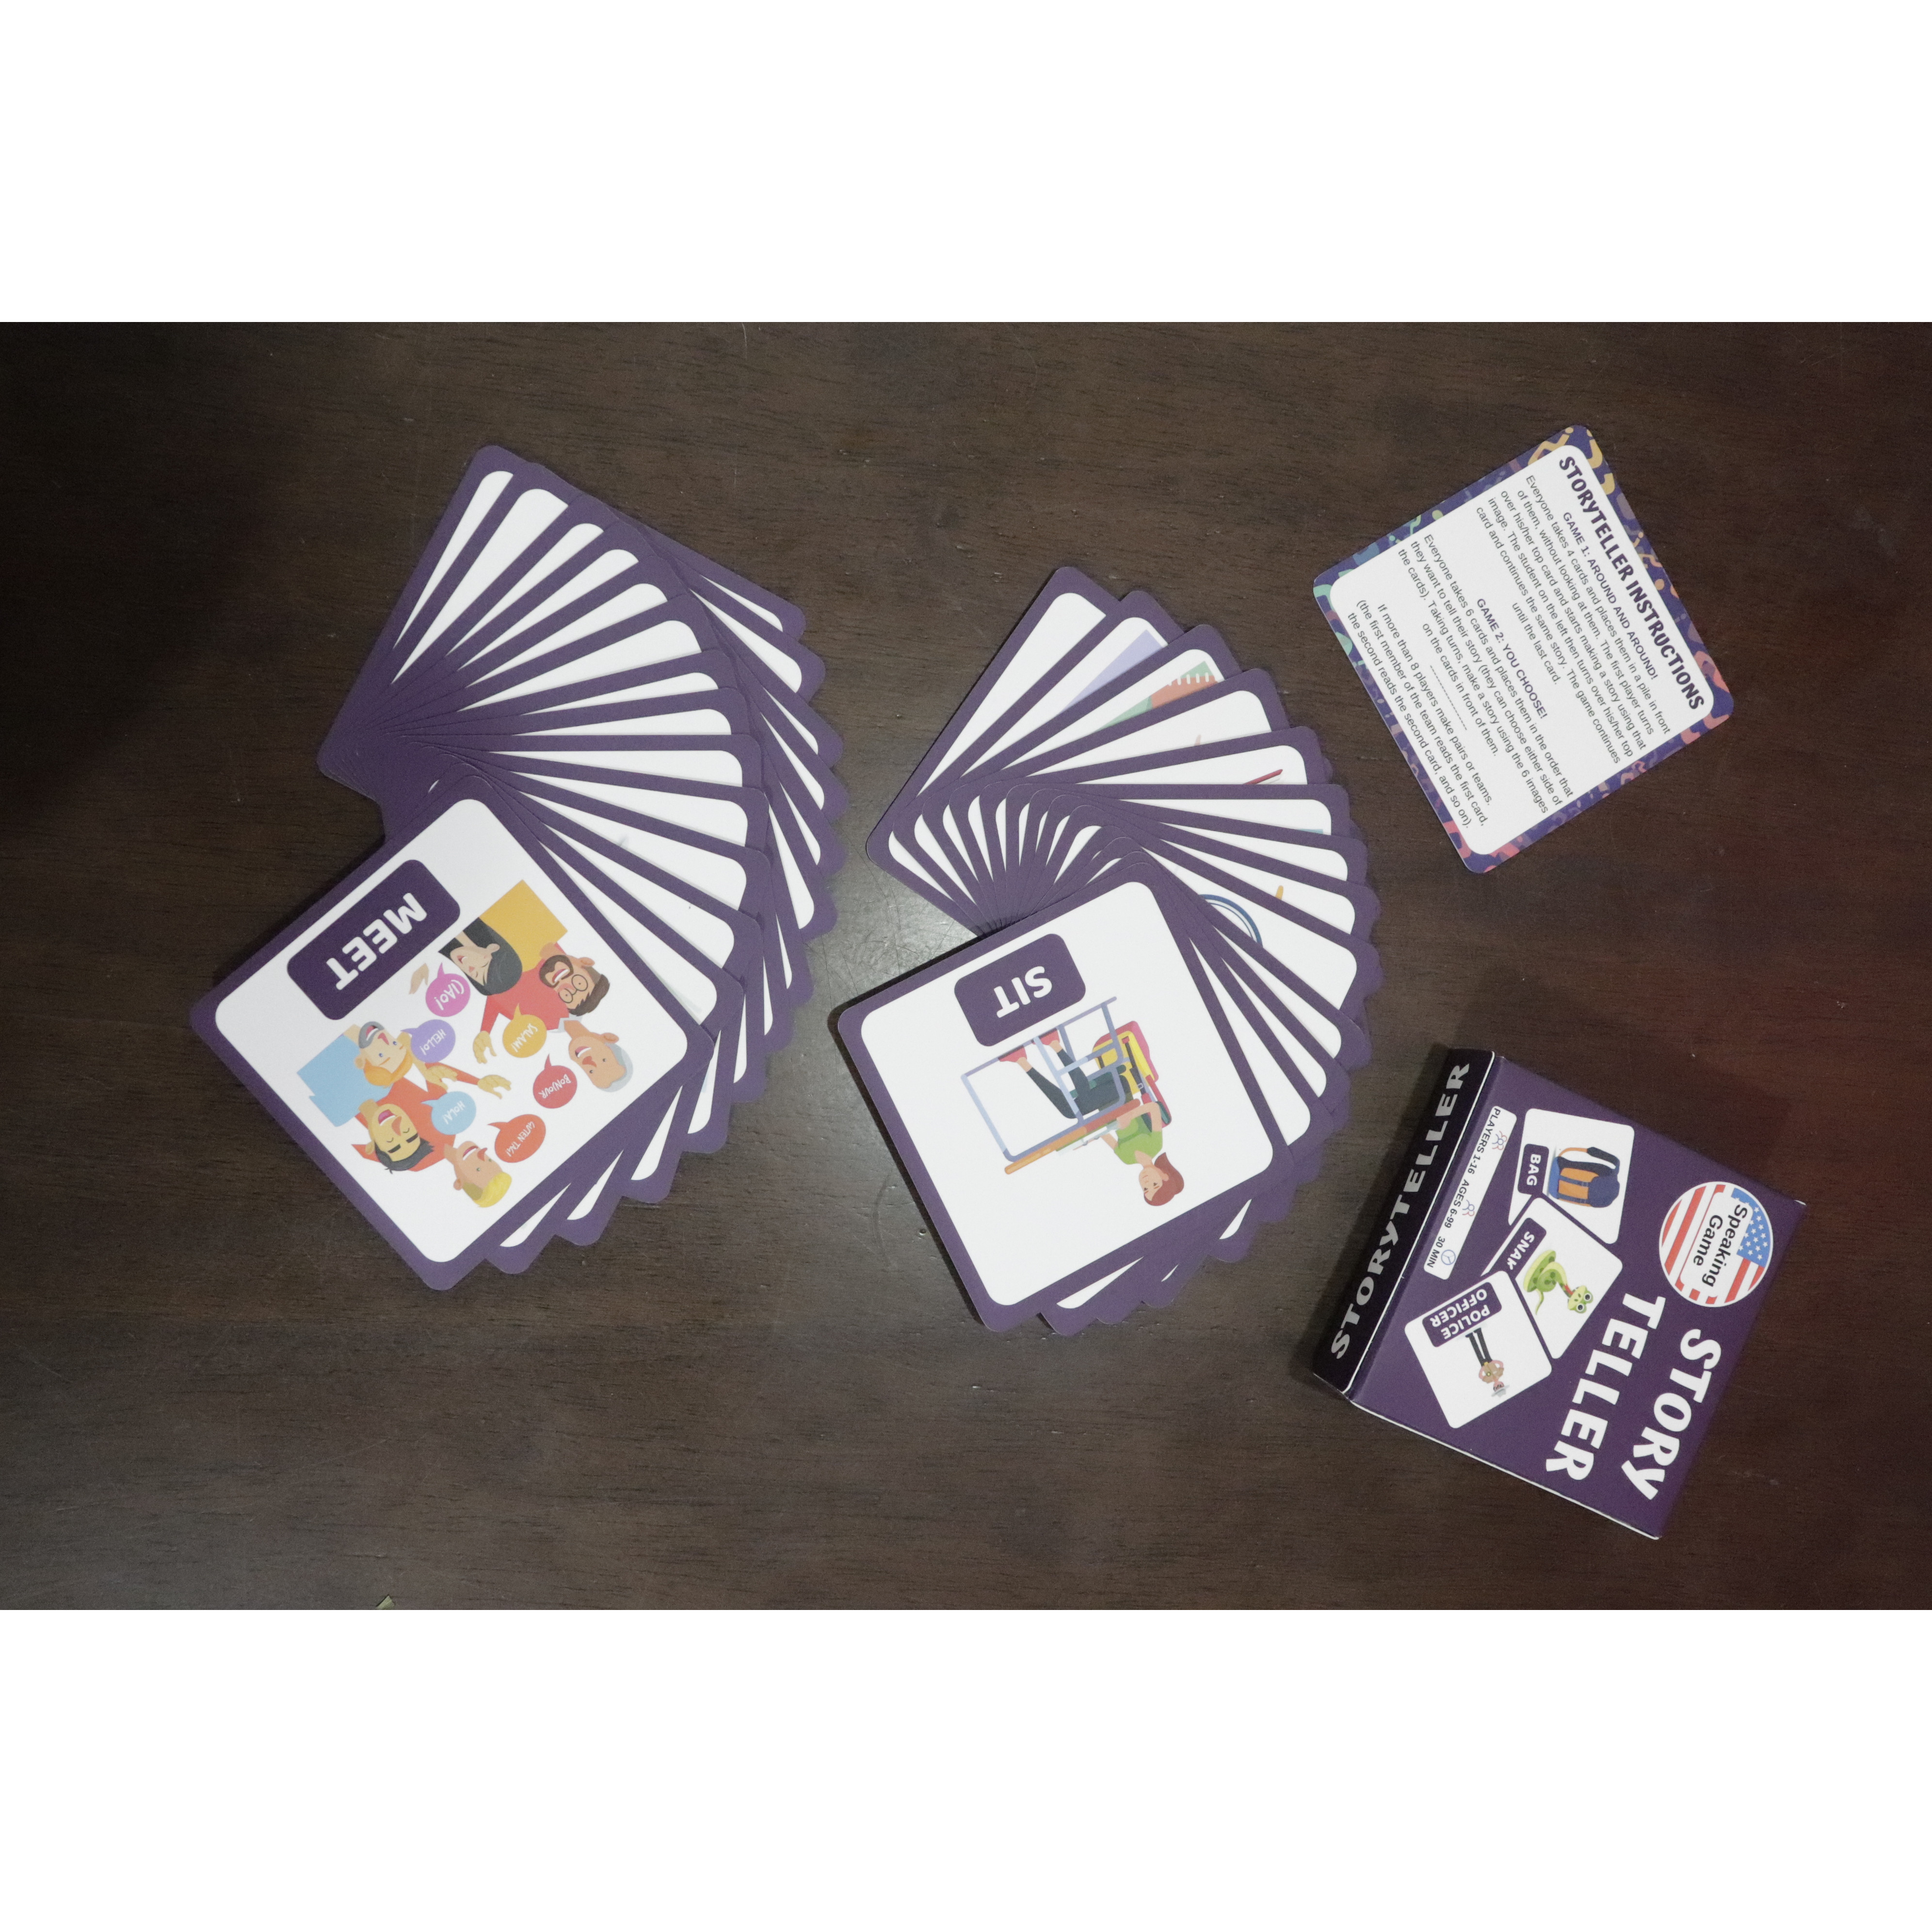 Storyteller - speaking board game for children, students - Game kể chuyện bằng thẻ tiếng Anh phù hợp nhiều cấp độ